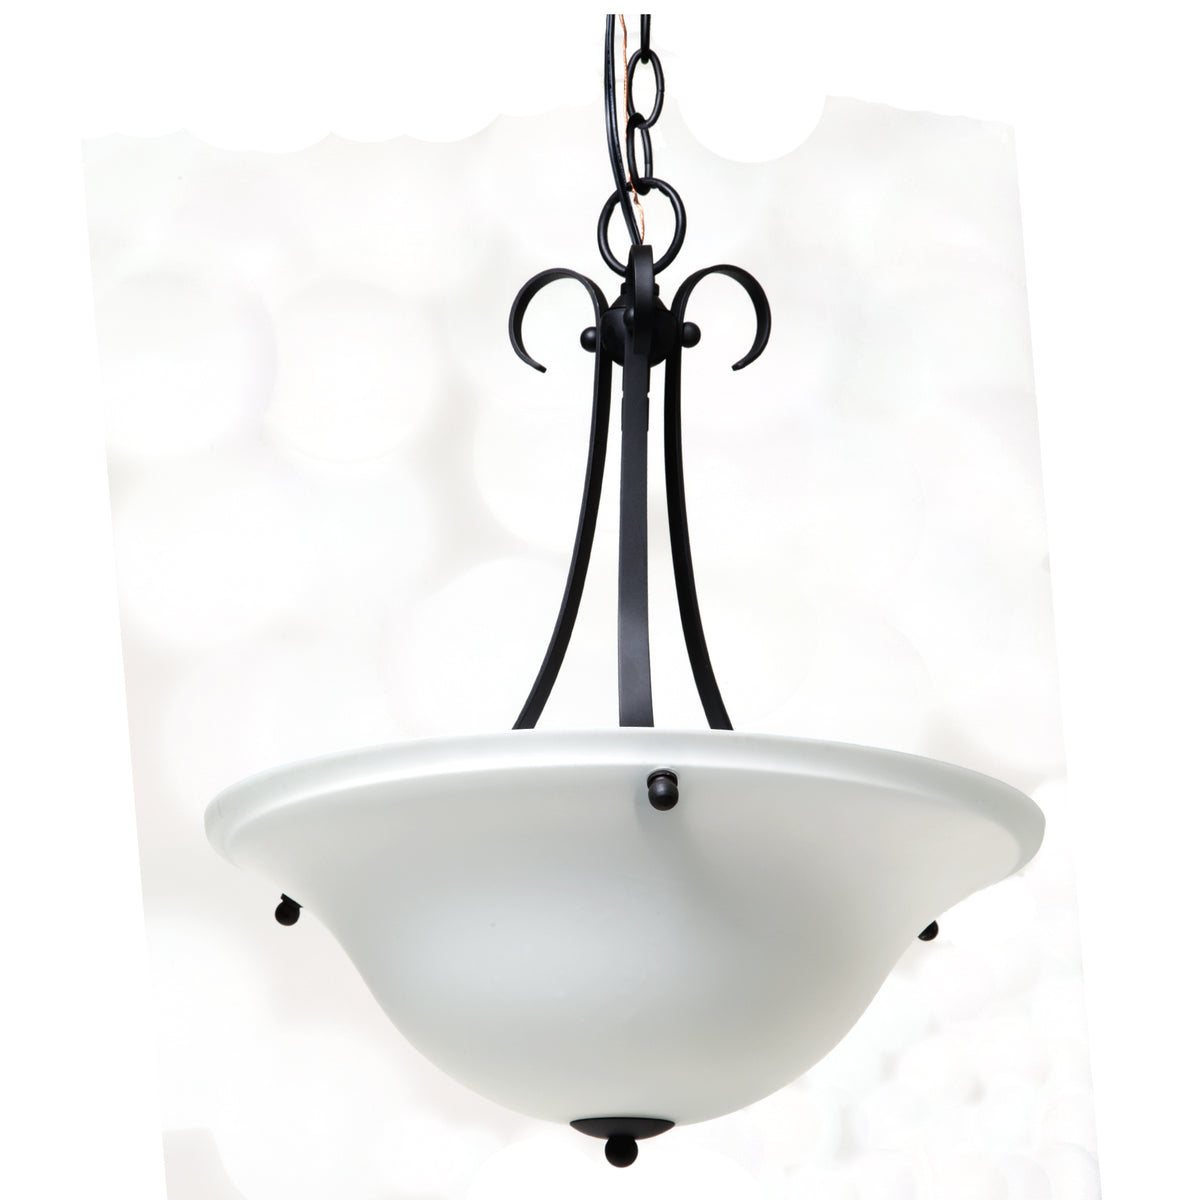 buy pendant light fixtures at cheap rate in bulk. wholesale & retail lamps & light fixtures store. home décor ideas, maintenance, repair replacement parts